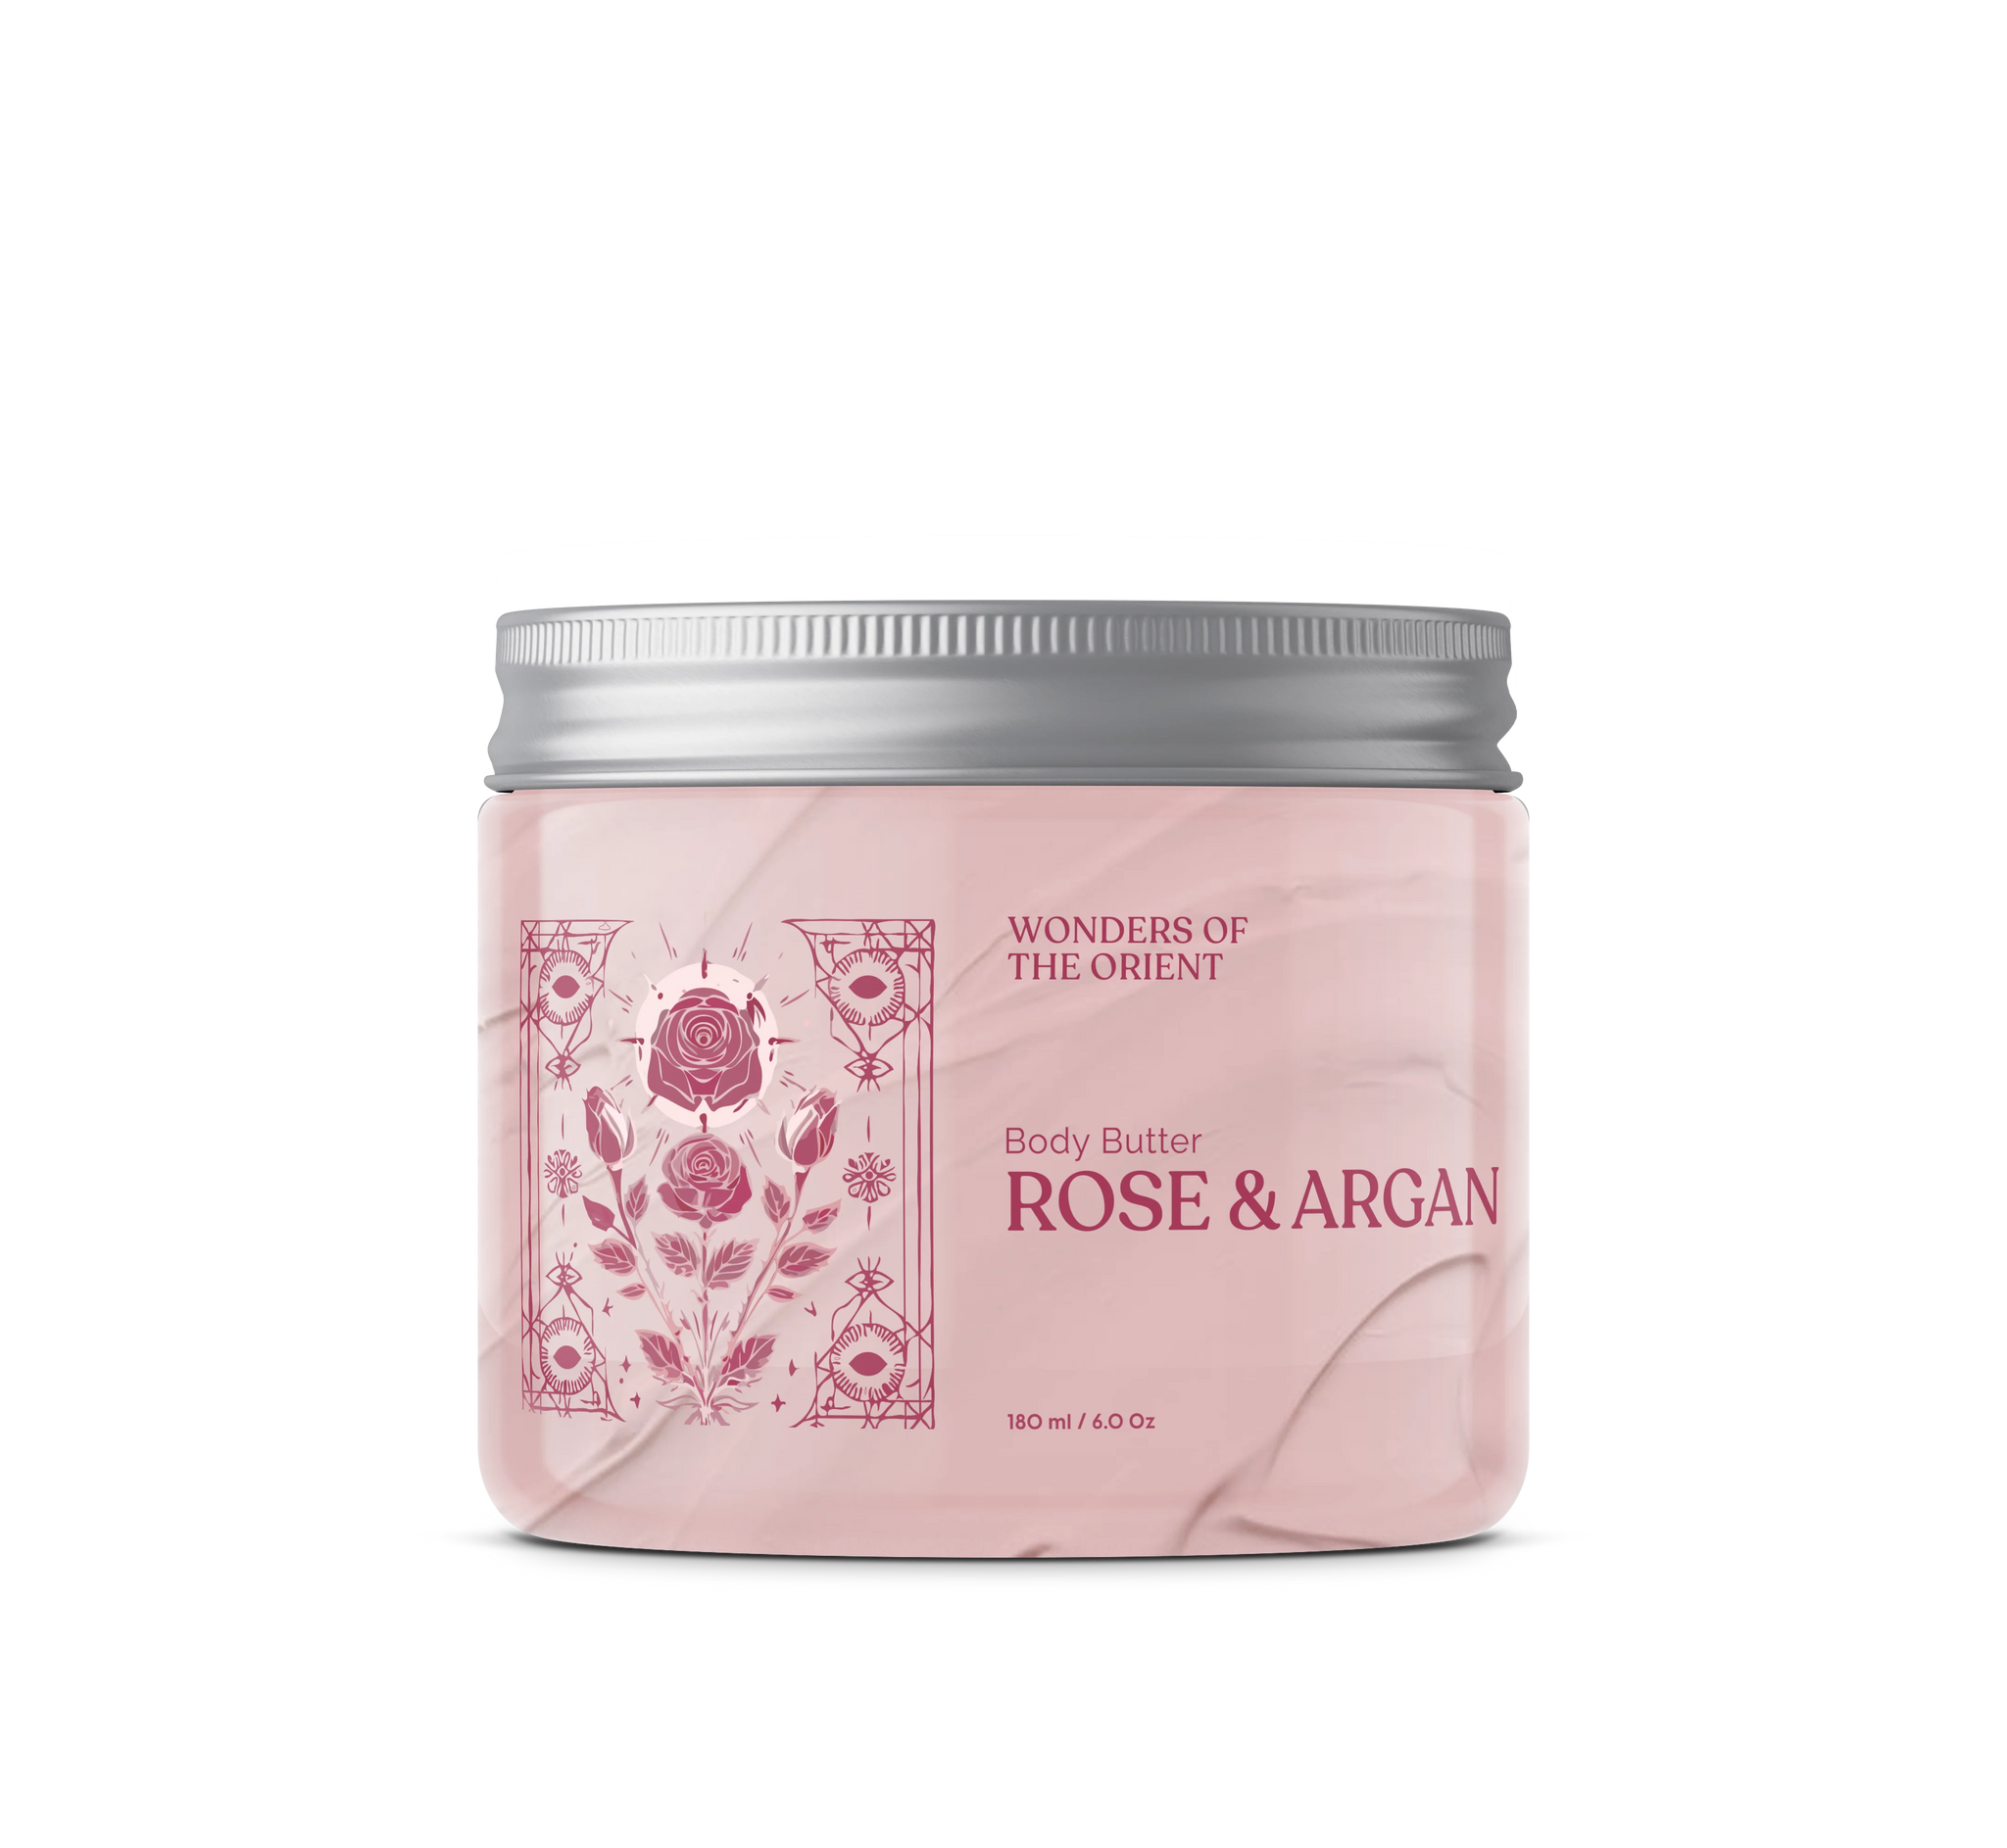 Rose & Argan Body Butter